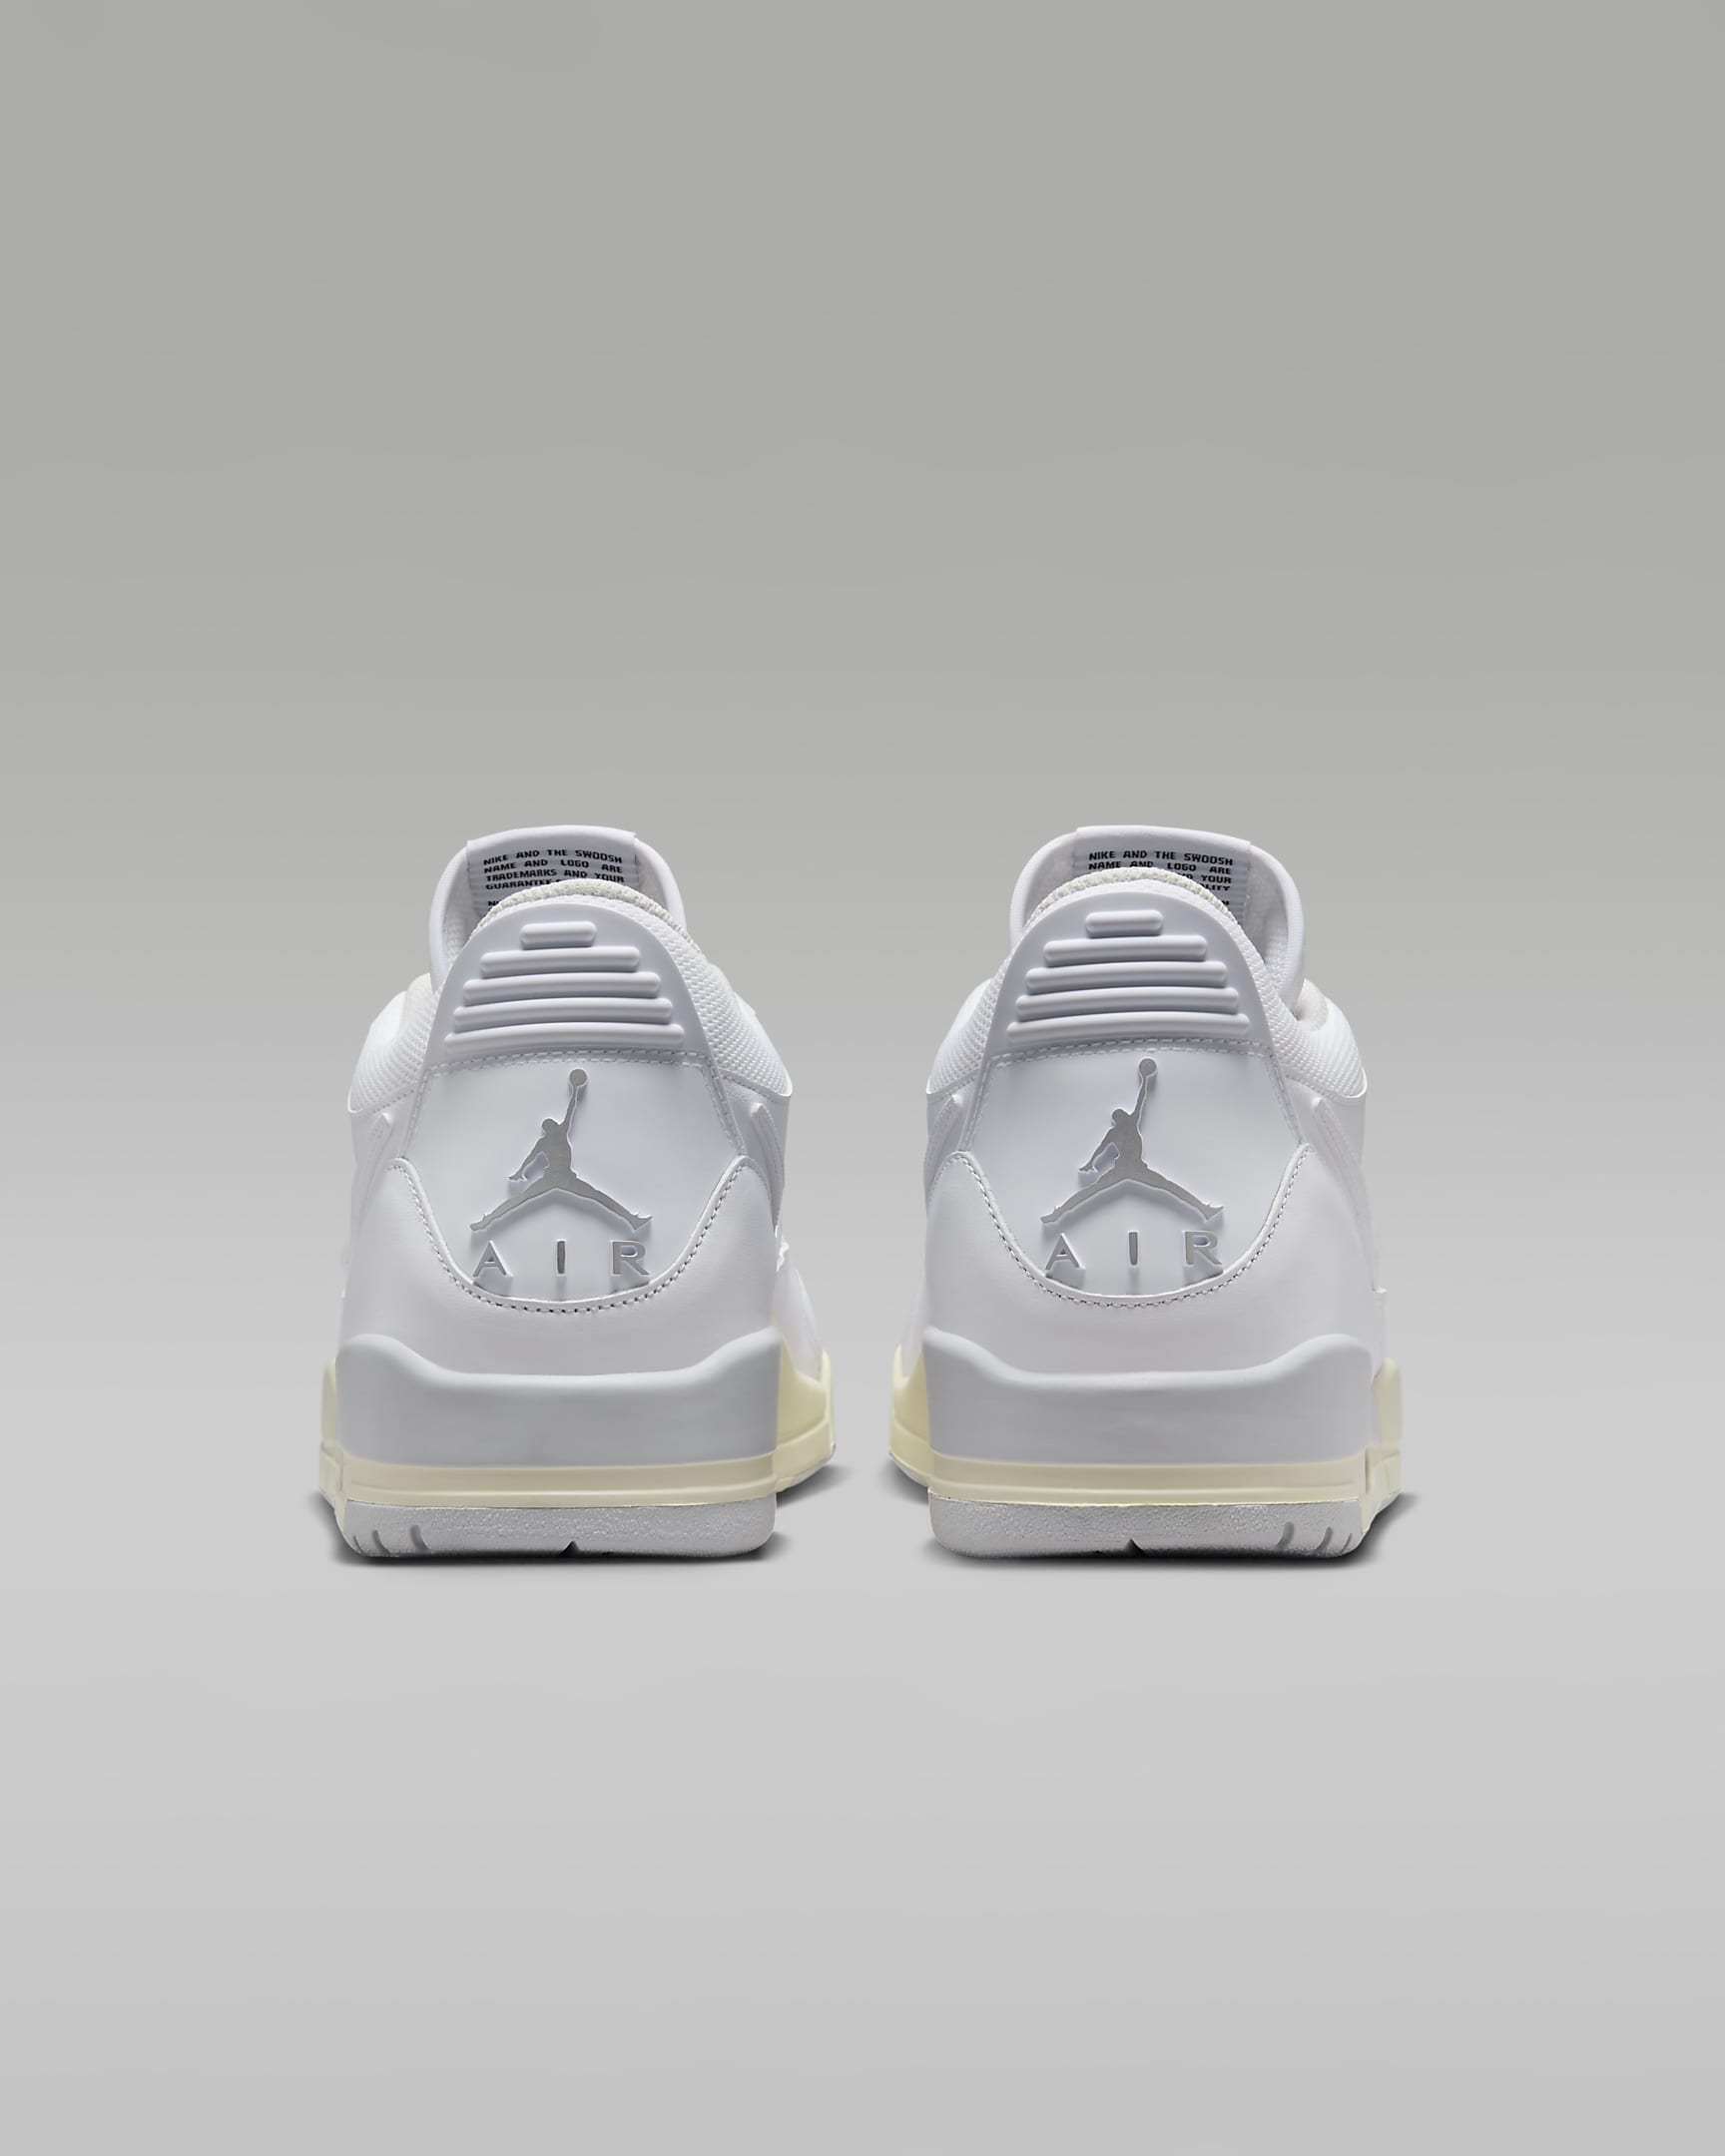 Air Jordan Legacy 312 Low Men's Shoes - White/Coconut Milk/Photon Dust/White